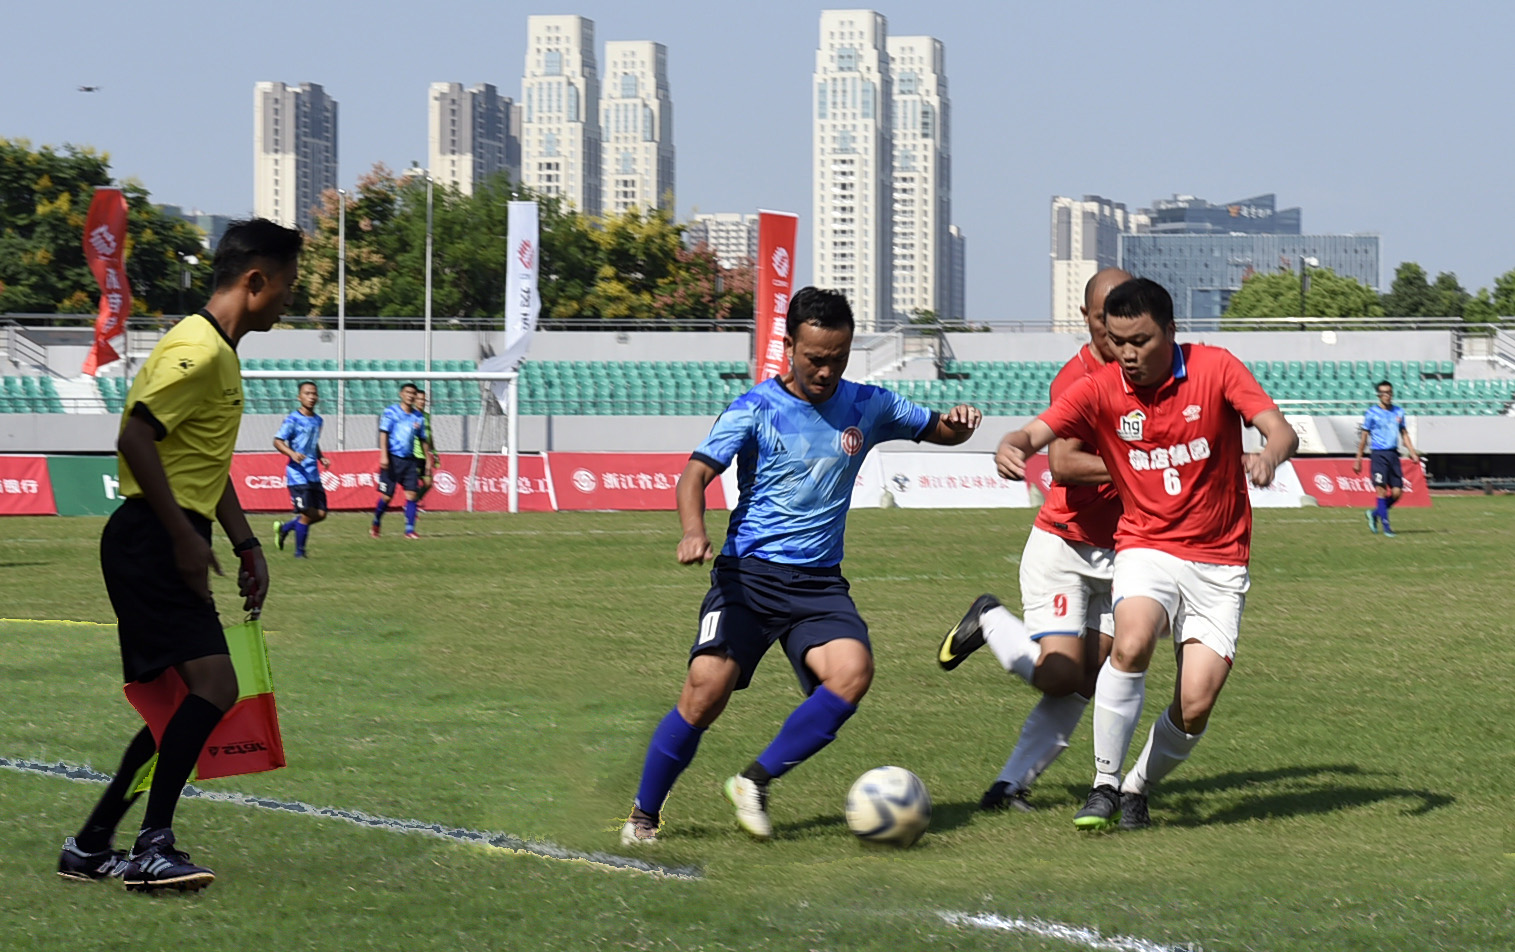 
2022年7月10日15:30第一届中国青少年足球联赛启动仪式